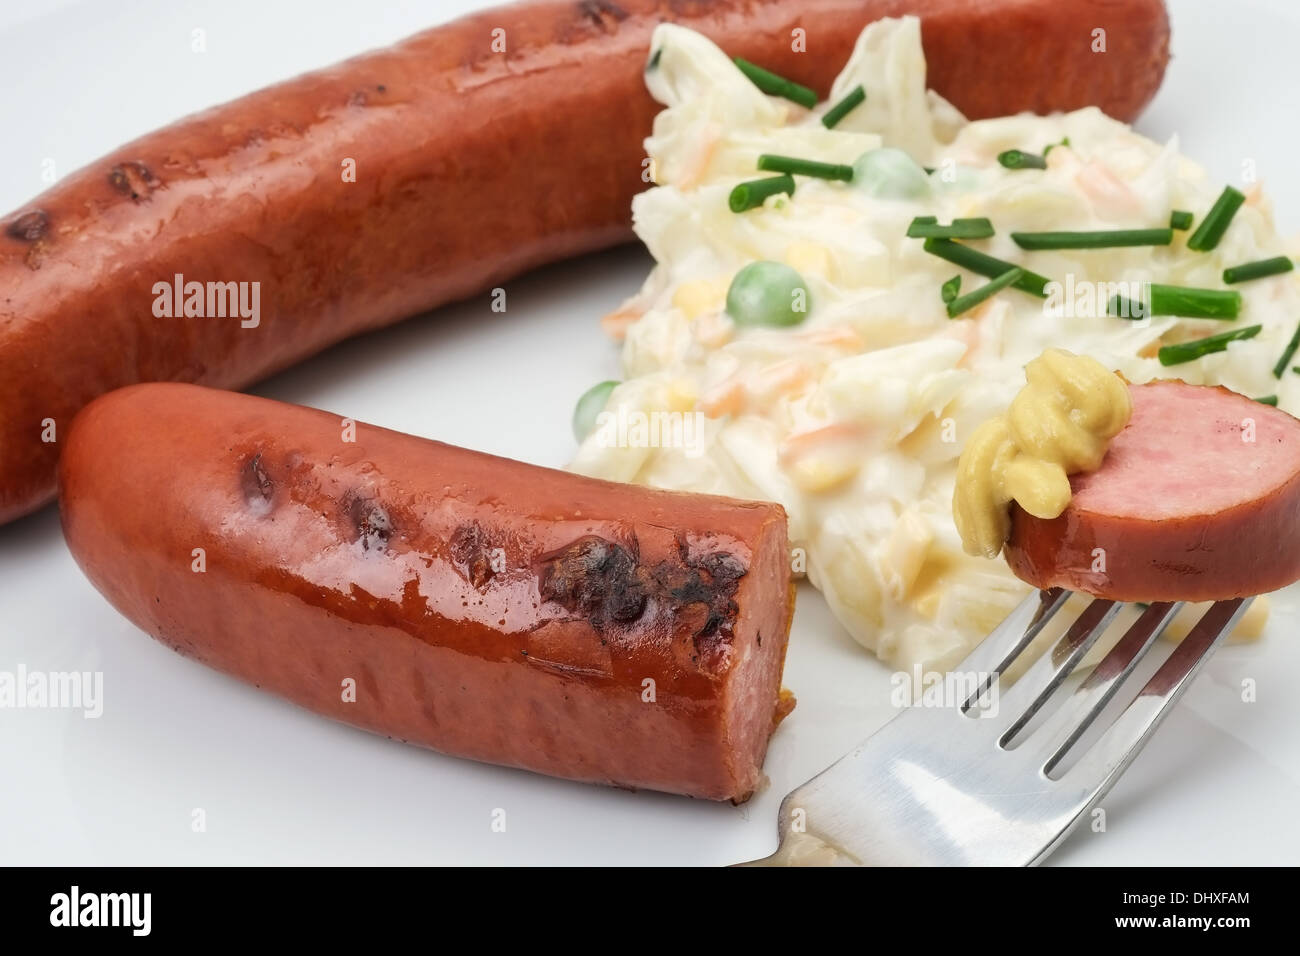 Nahaufnahme einer verzehrfertige Deutsche Bratwurst Wurst mit Krautsalat und Senf serviert. Stockfoto